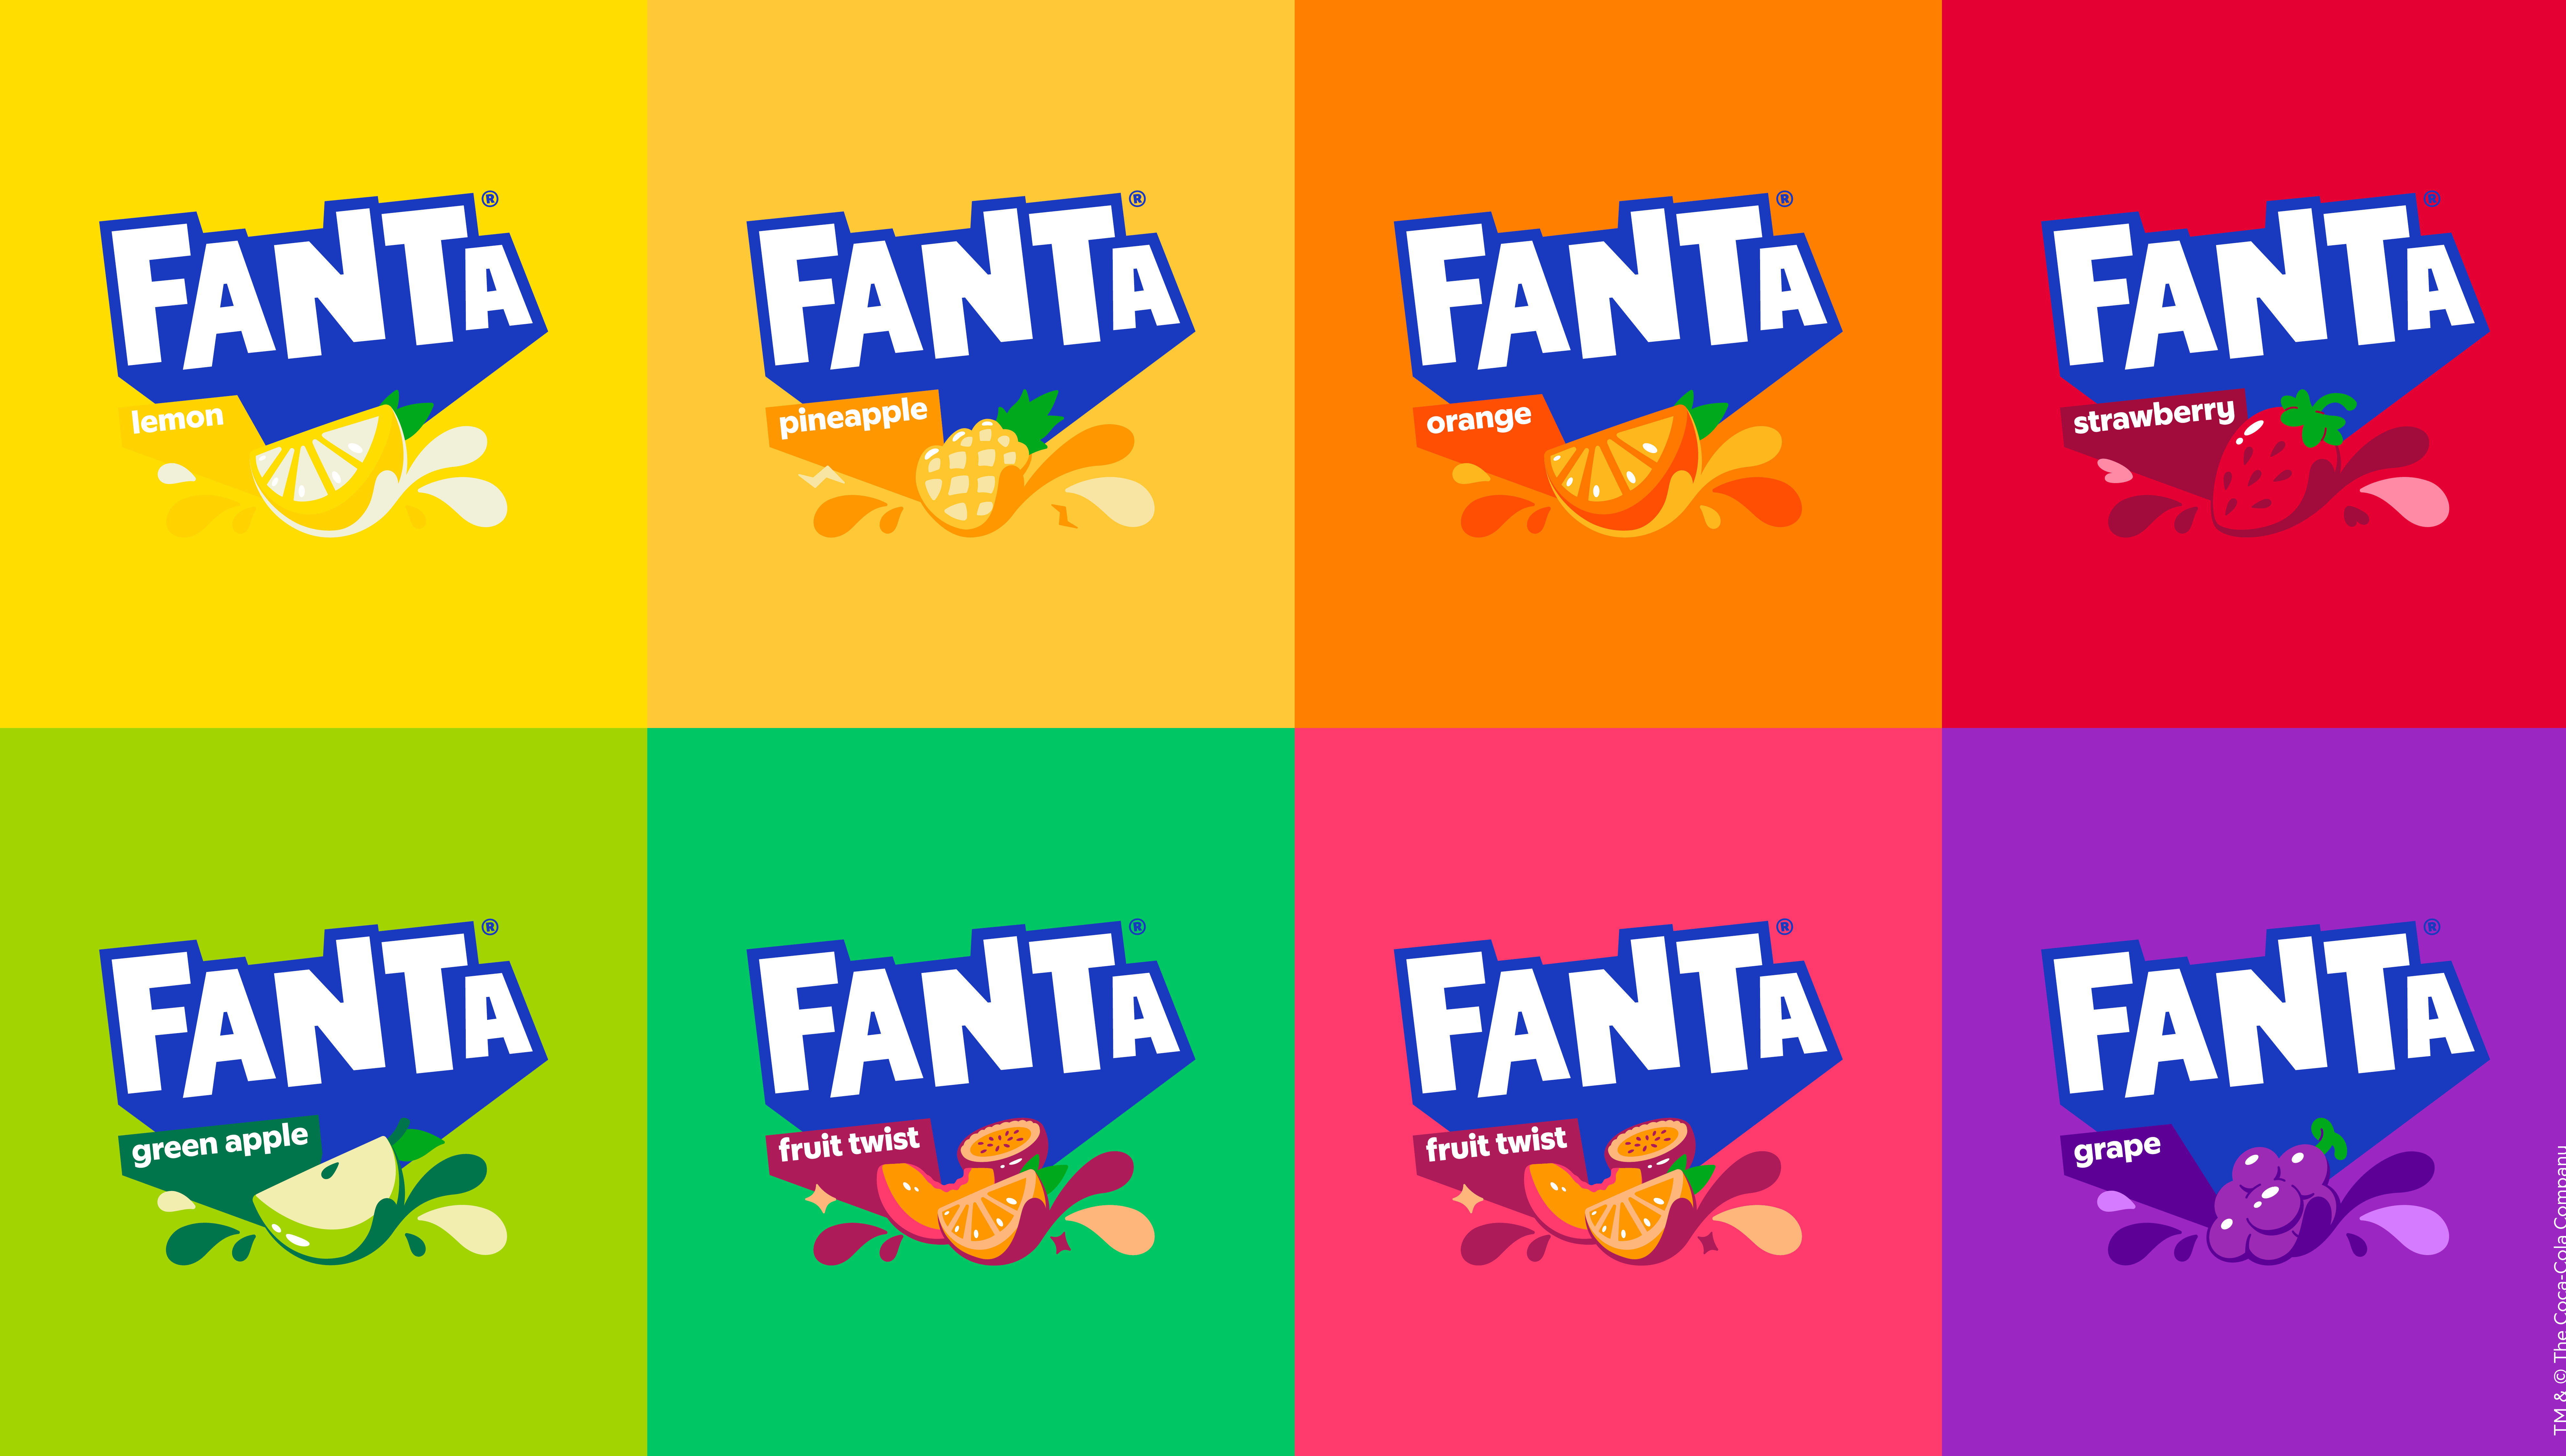 Fanta®